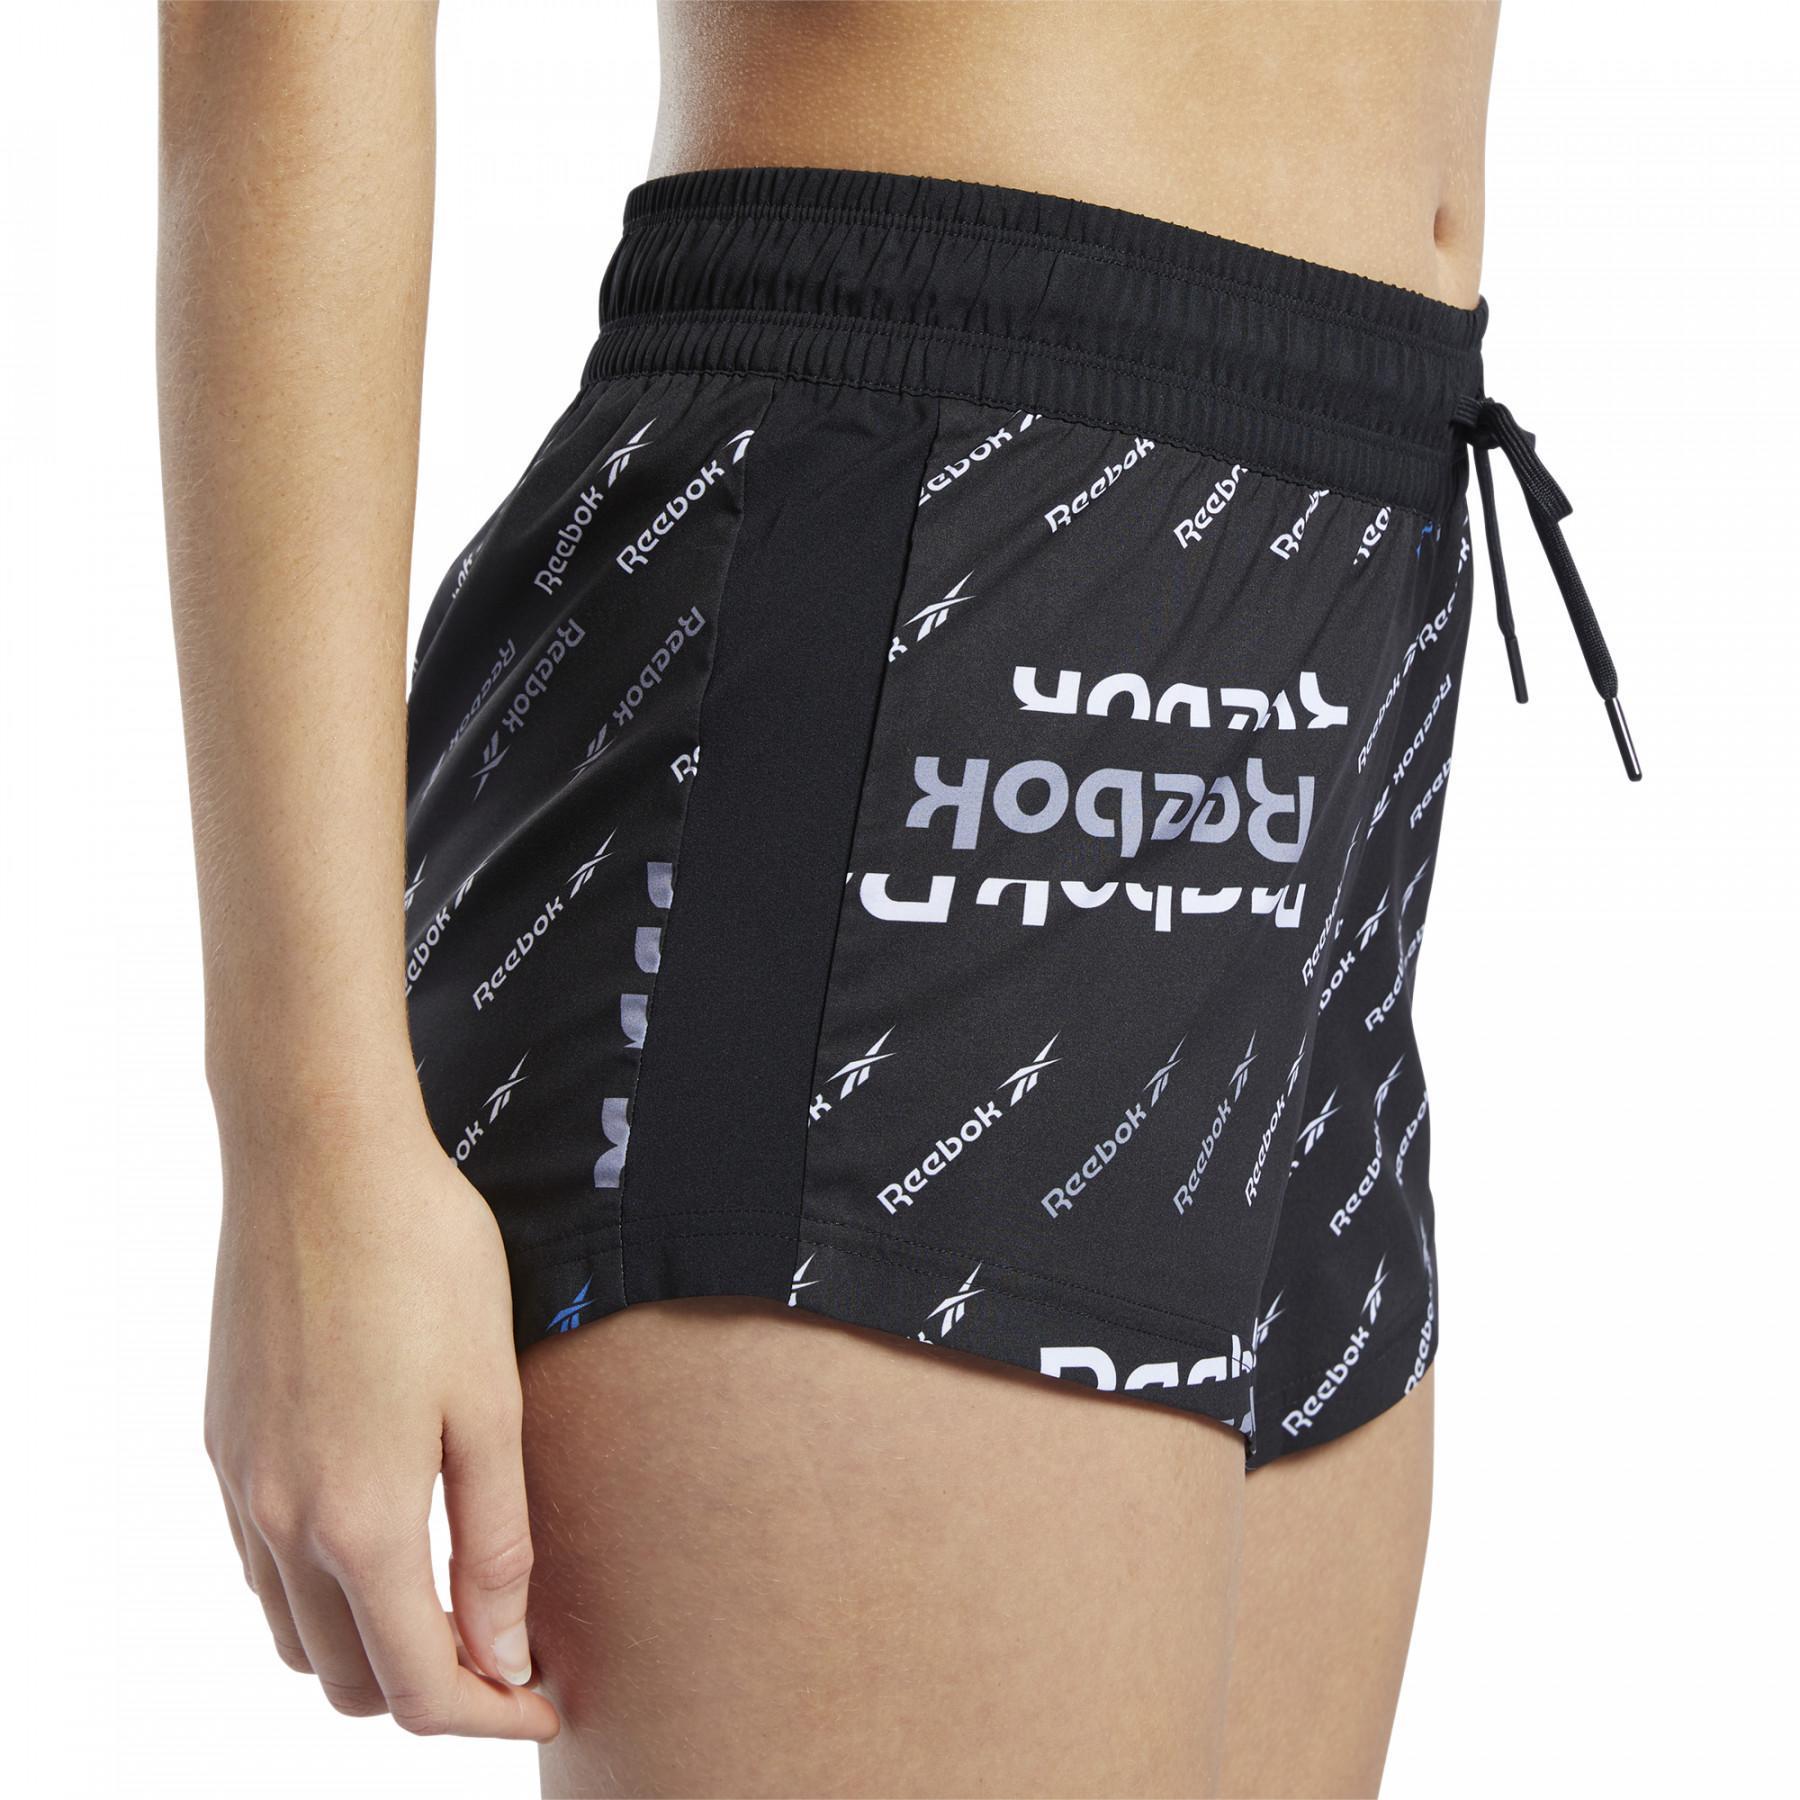 Damen-Shorts Reebok Workout Ready Printed